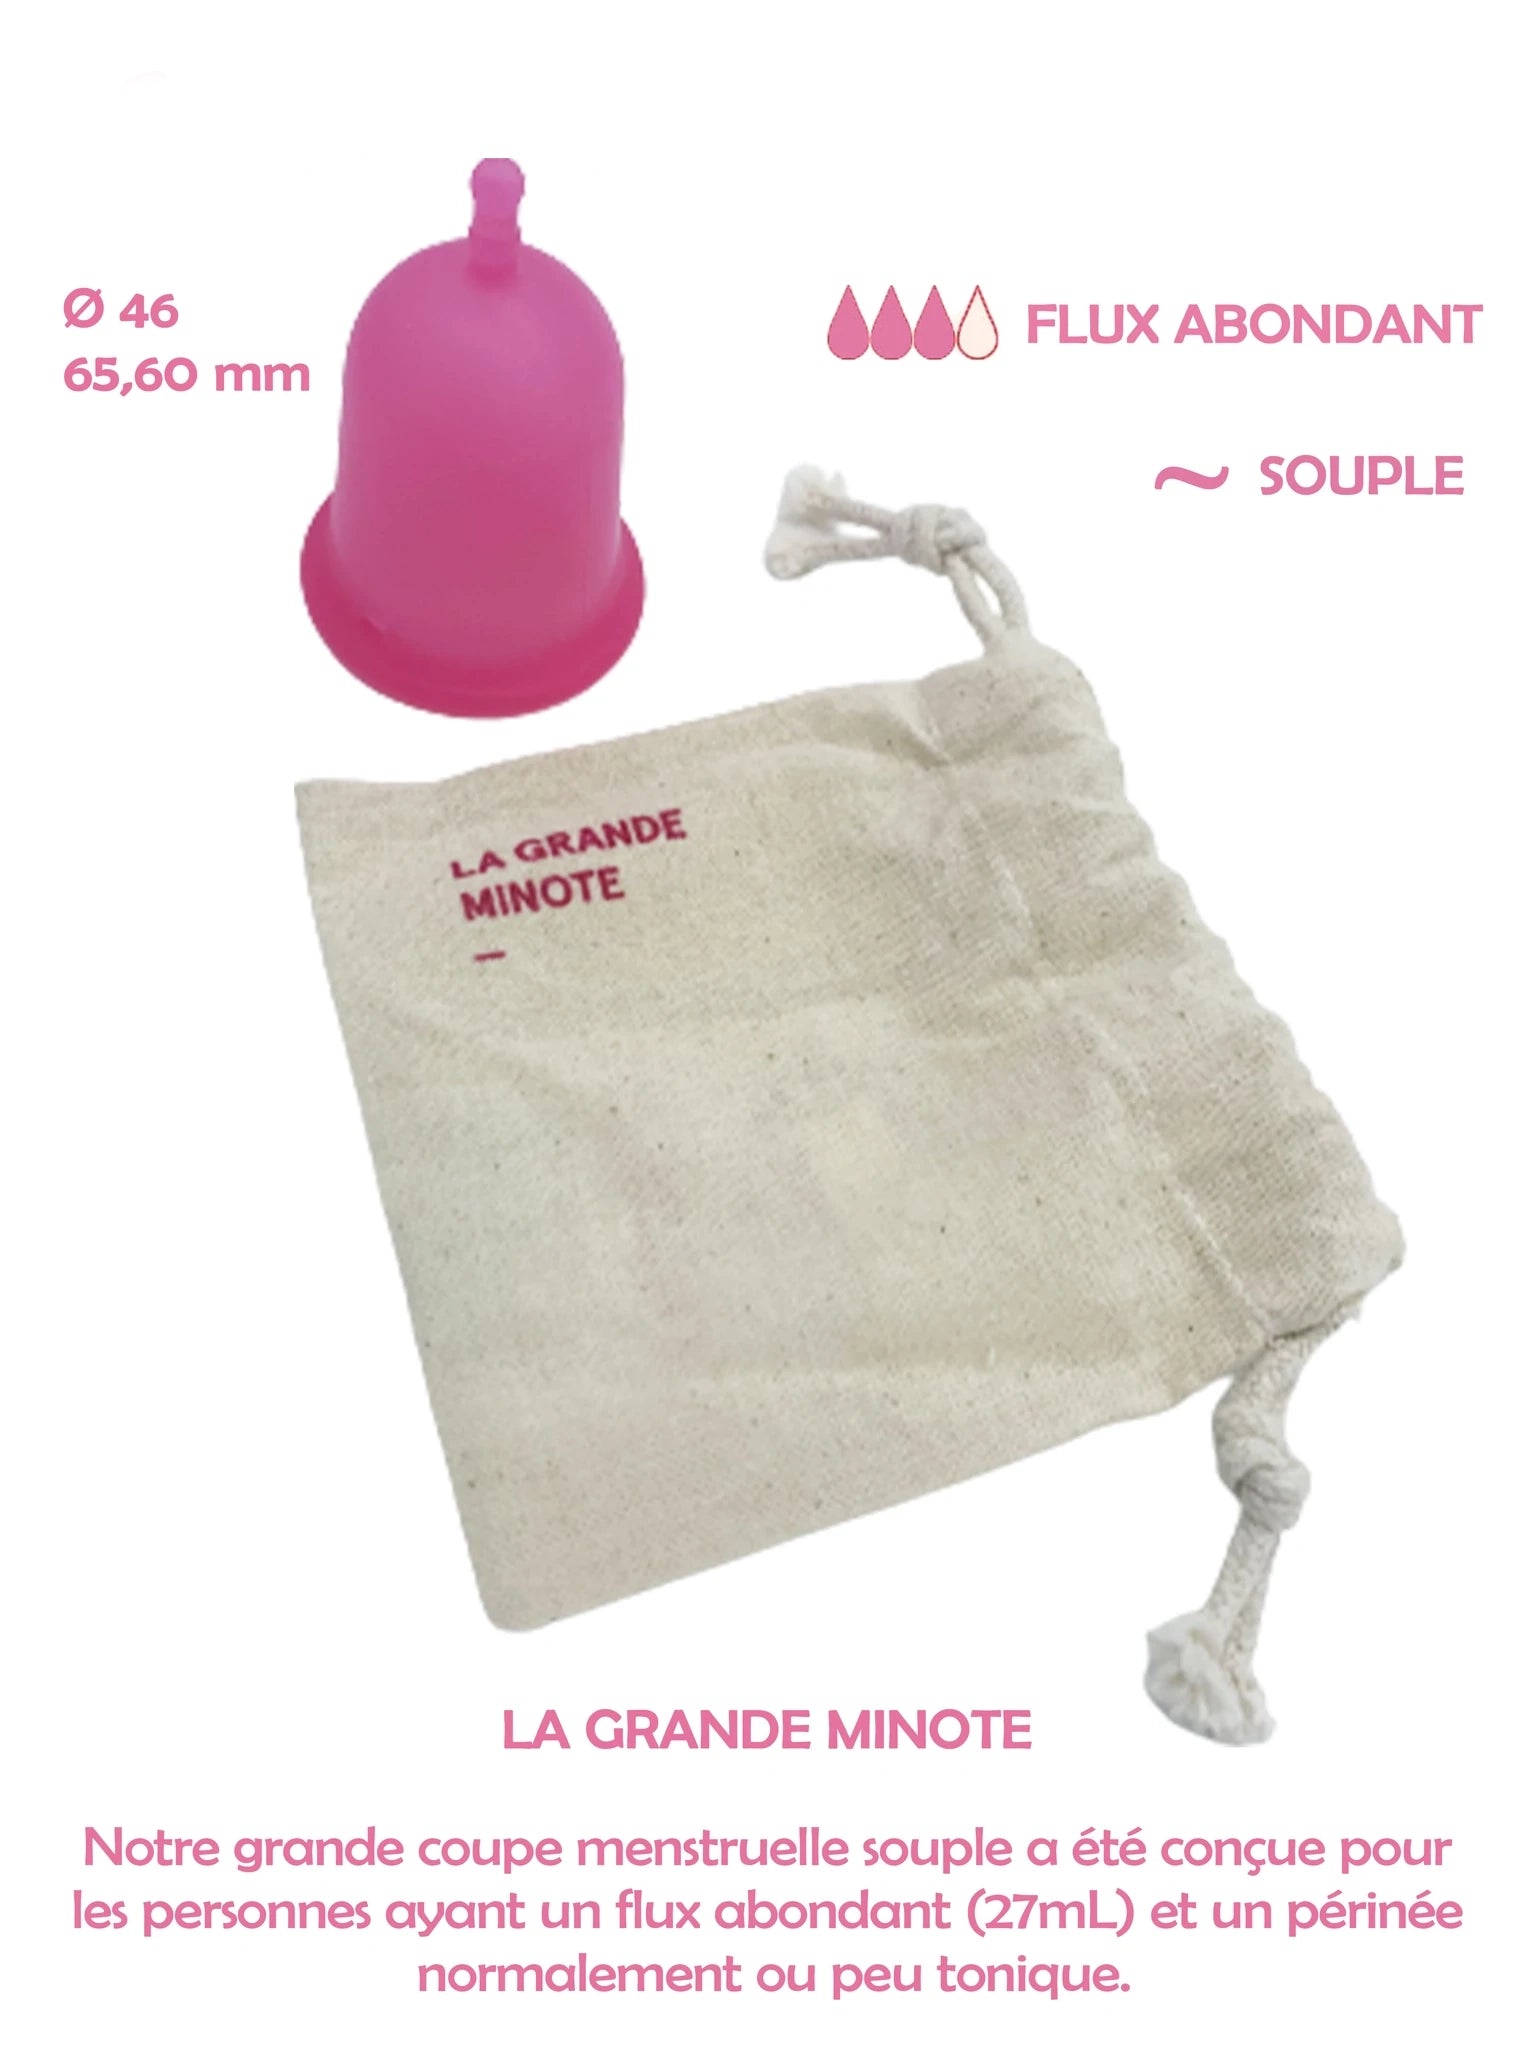 Coupe menstruelle souple rose la grande minote 27 ml pour les flux moyen à abondant fabriquée en France. Silicone de grade médical platine